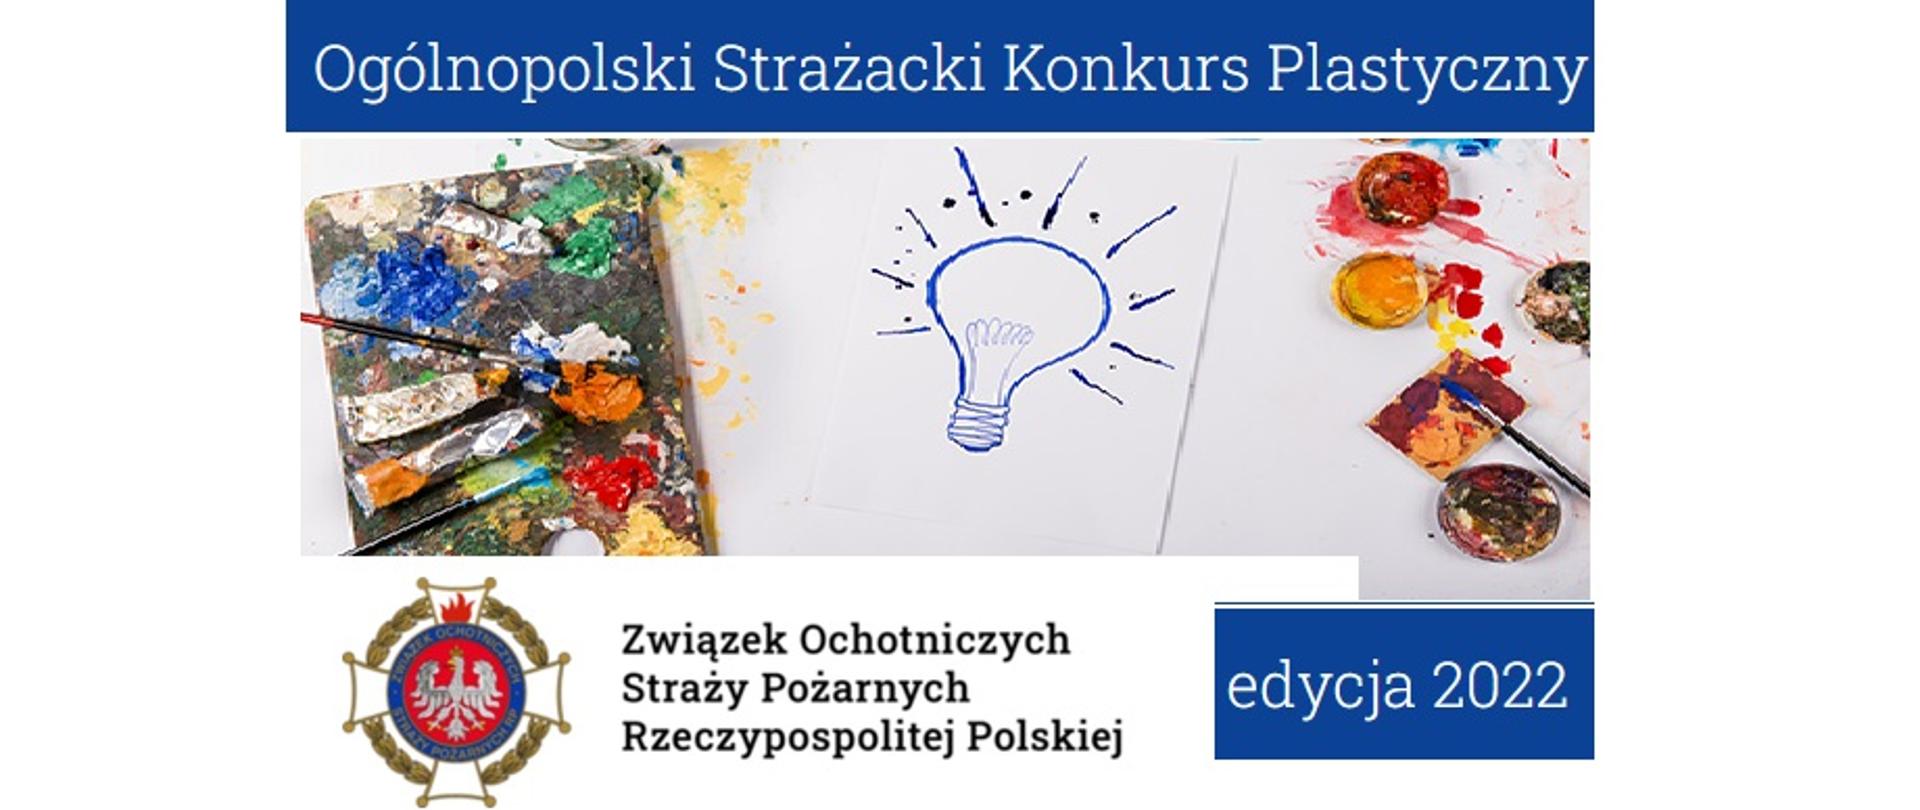 Zdjęcie przedstawia paletę z farbami Żarówkę symbolizującą pomysł i napis Ogólnopolski Strażacki Konkurs Plastyczny edycja 2022